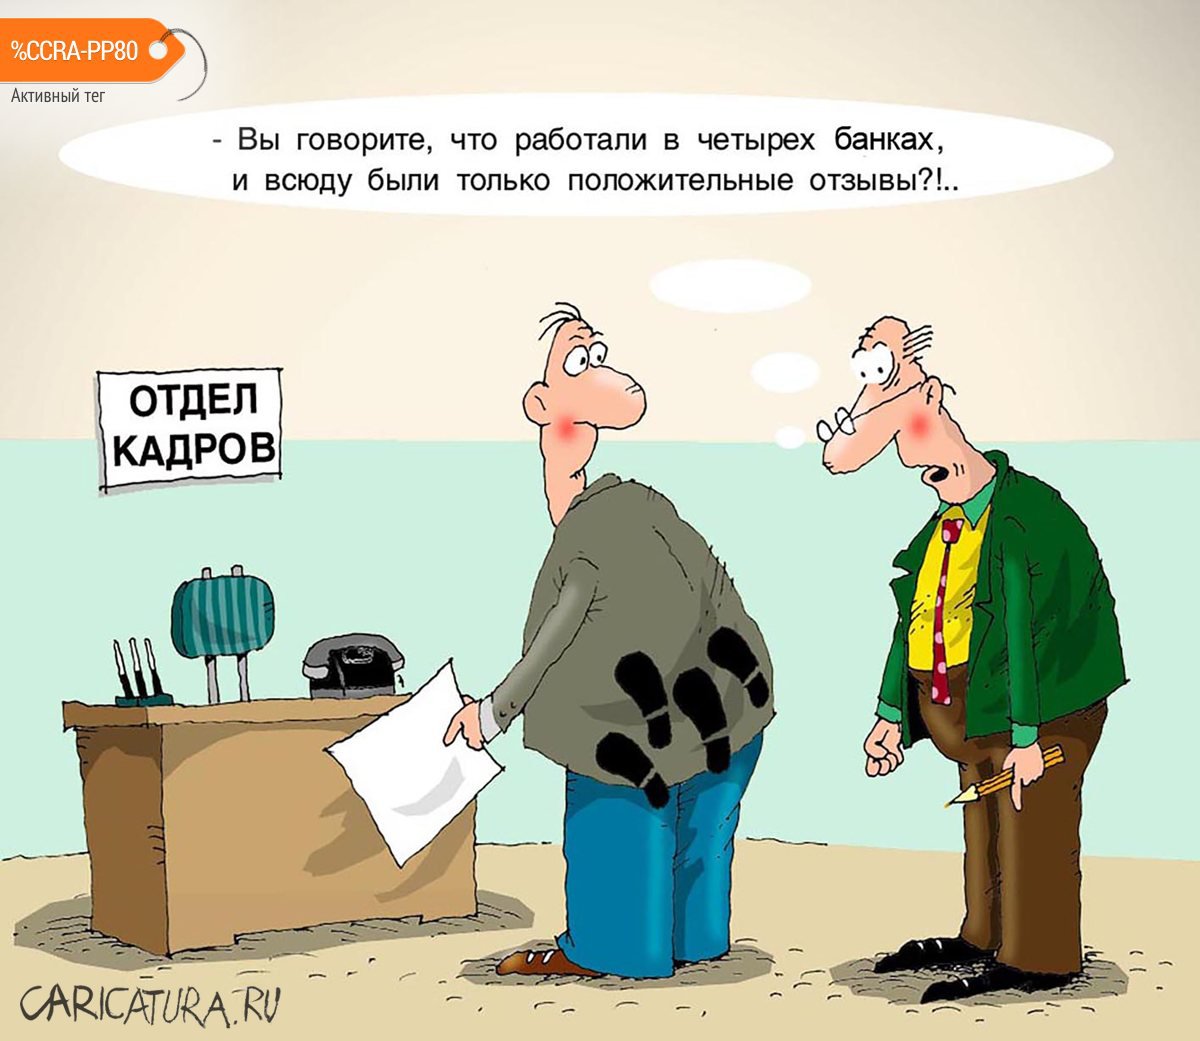 Карикатура "В отделе кадров", Николай Крутиков